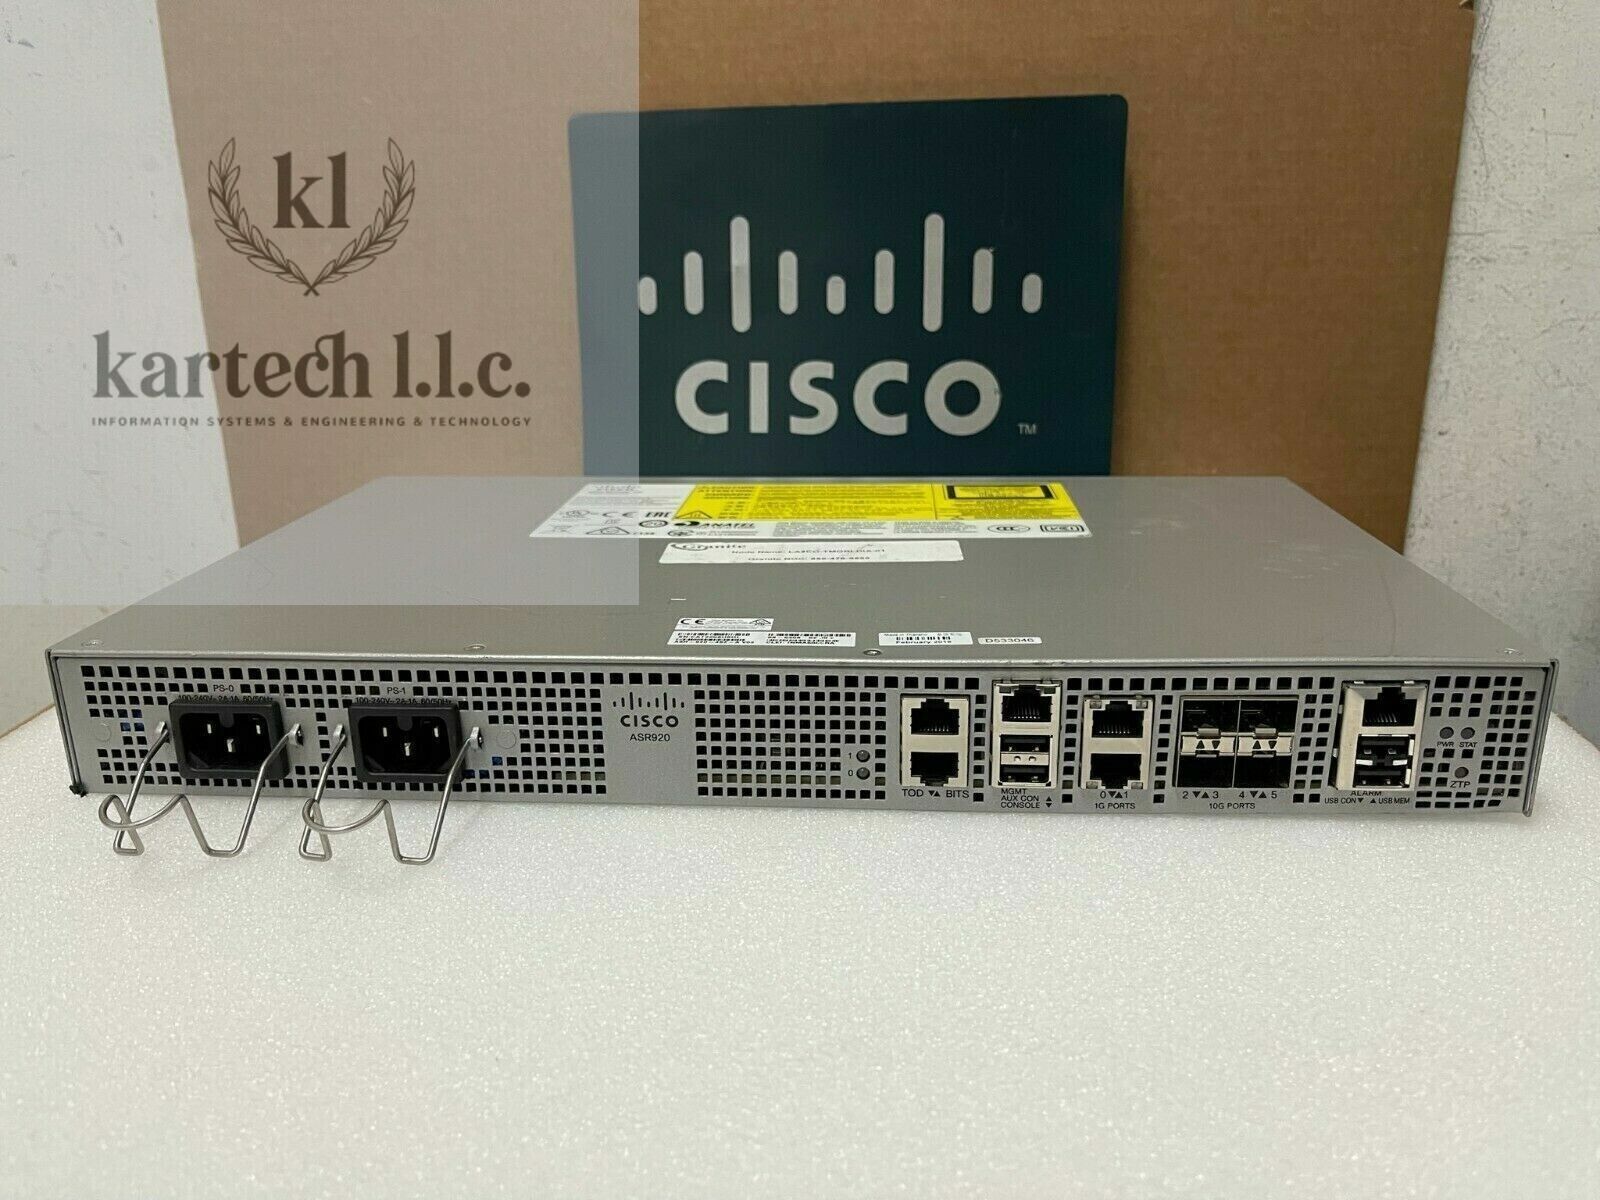 CISCO ASR-920-4SZ-A -Aggregation Services Router 2x Gigabit Ethernet 4x 10G SFP+